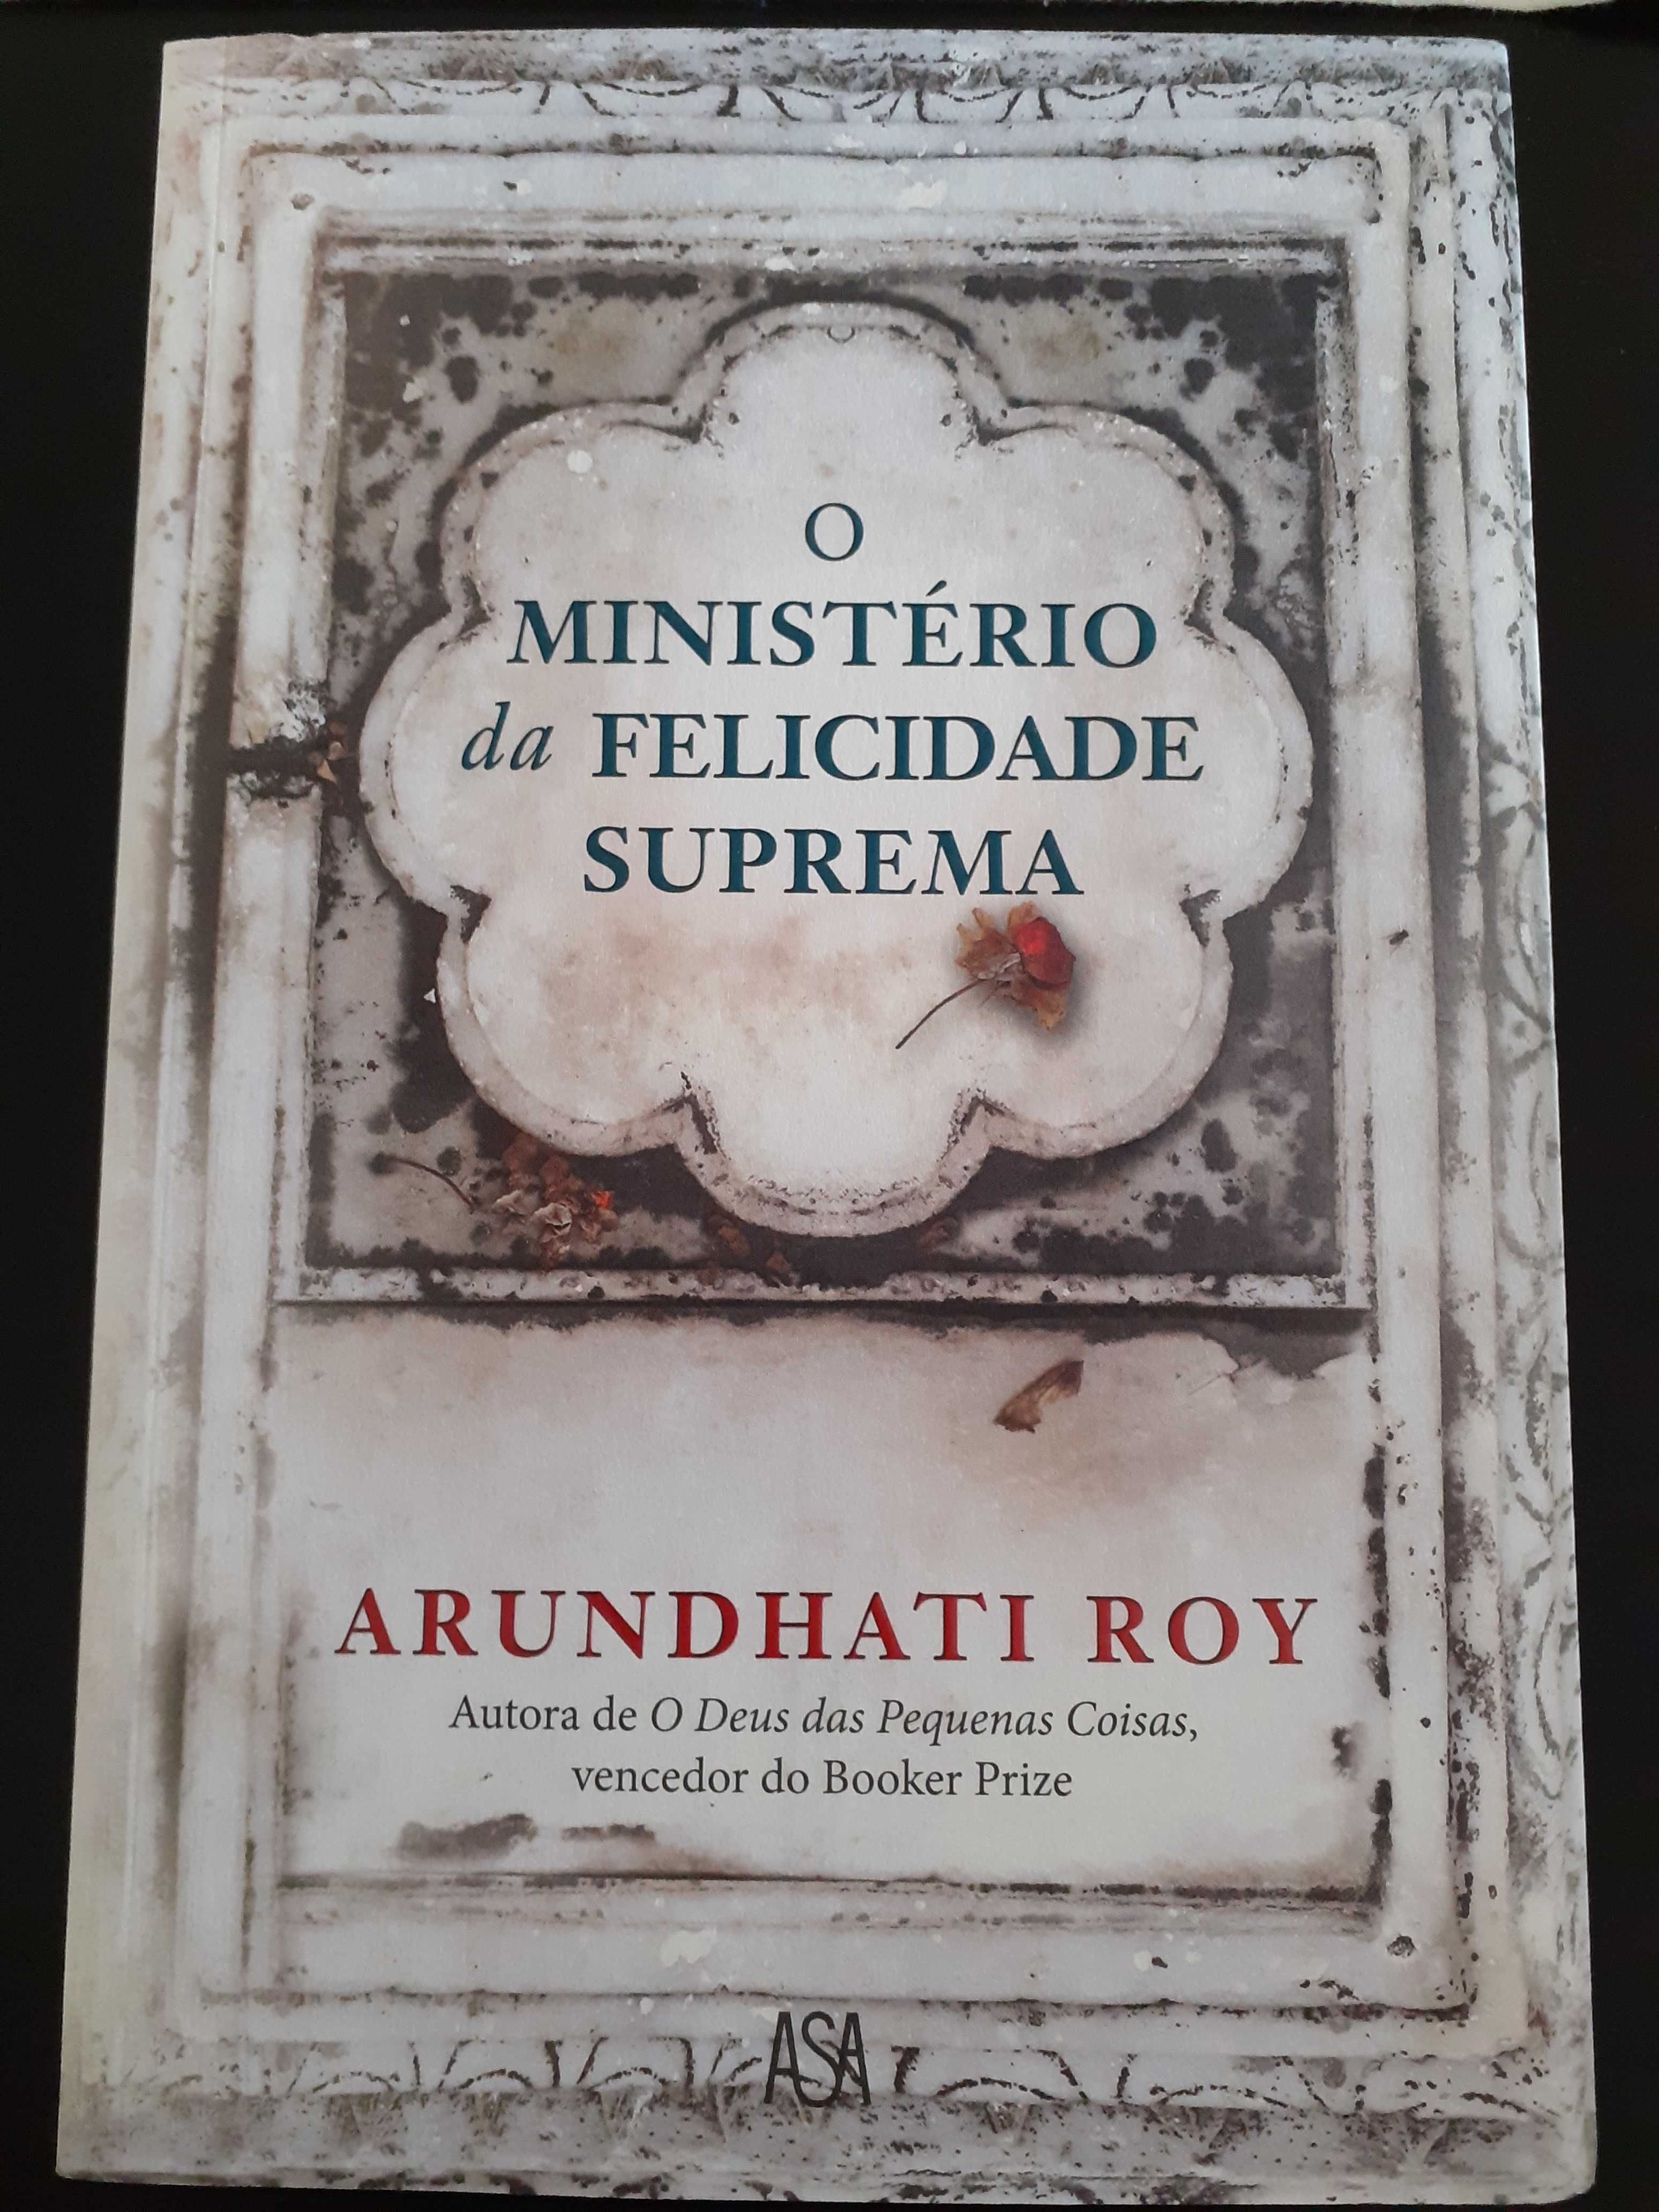 O Ministerio da Felicidade Suprema de Arundhati Roy